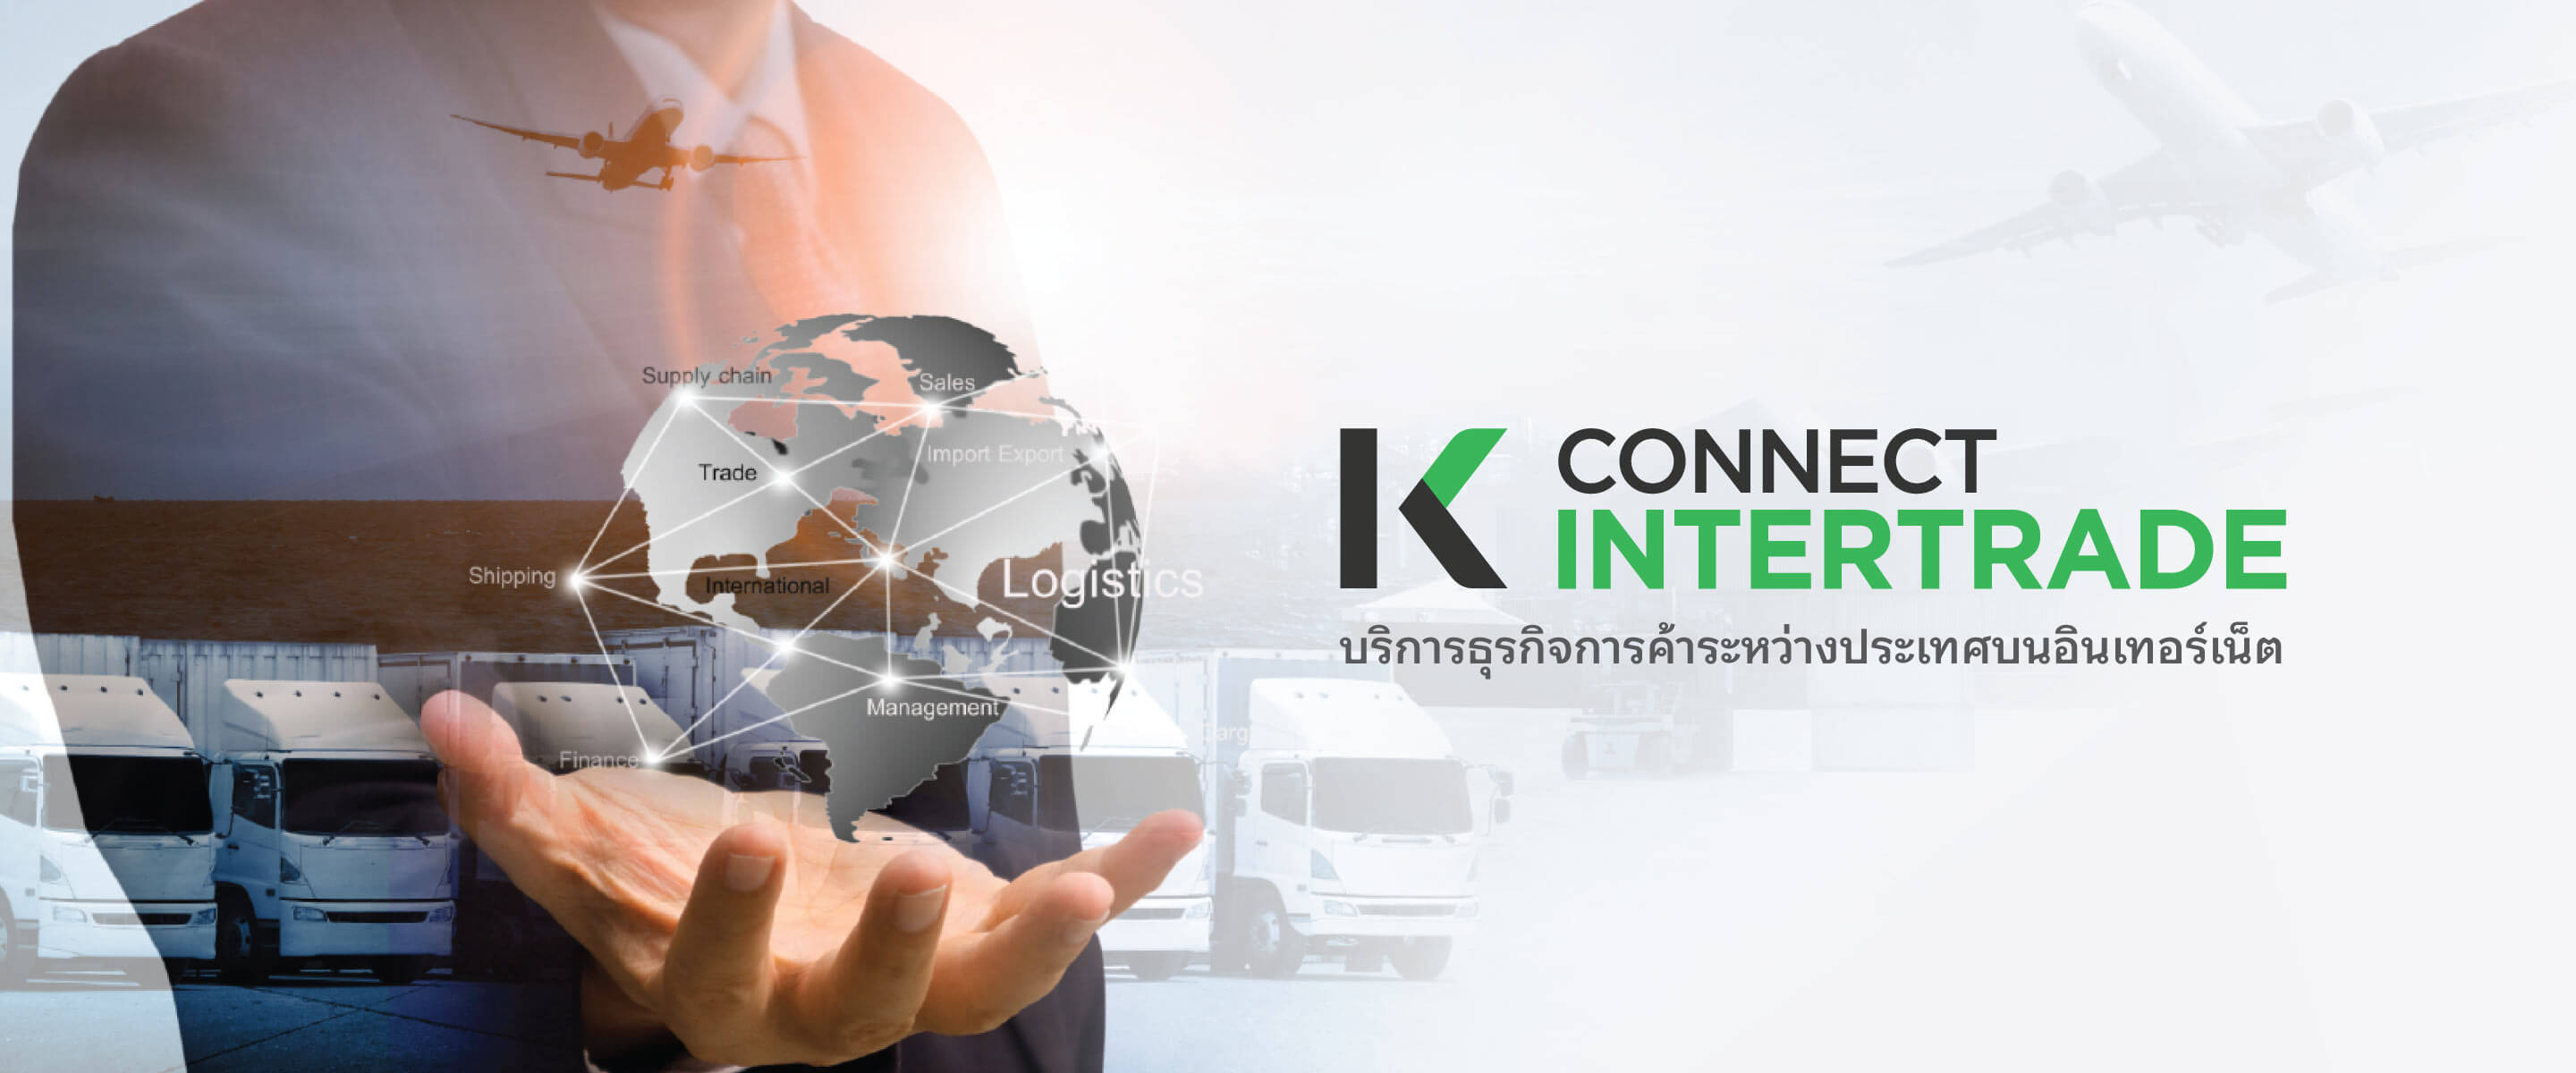 K CONNECT-Intertrade,  บริการธุรกิจการค้าระหว่างประเทศบนอินเตอร์เน็ต